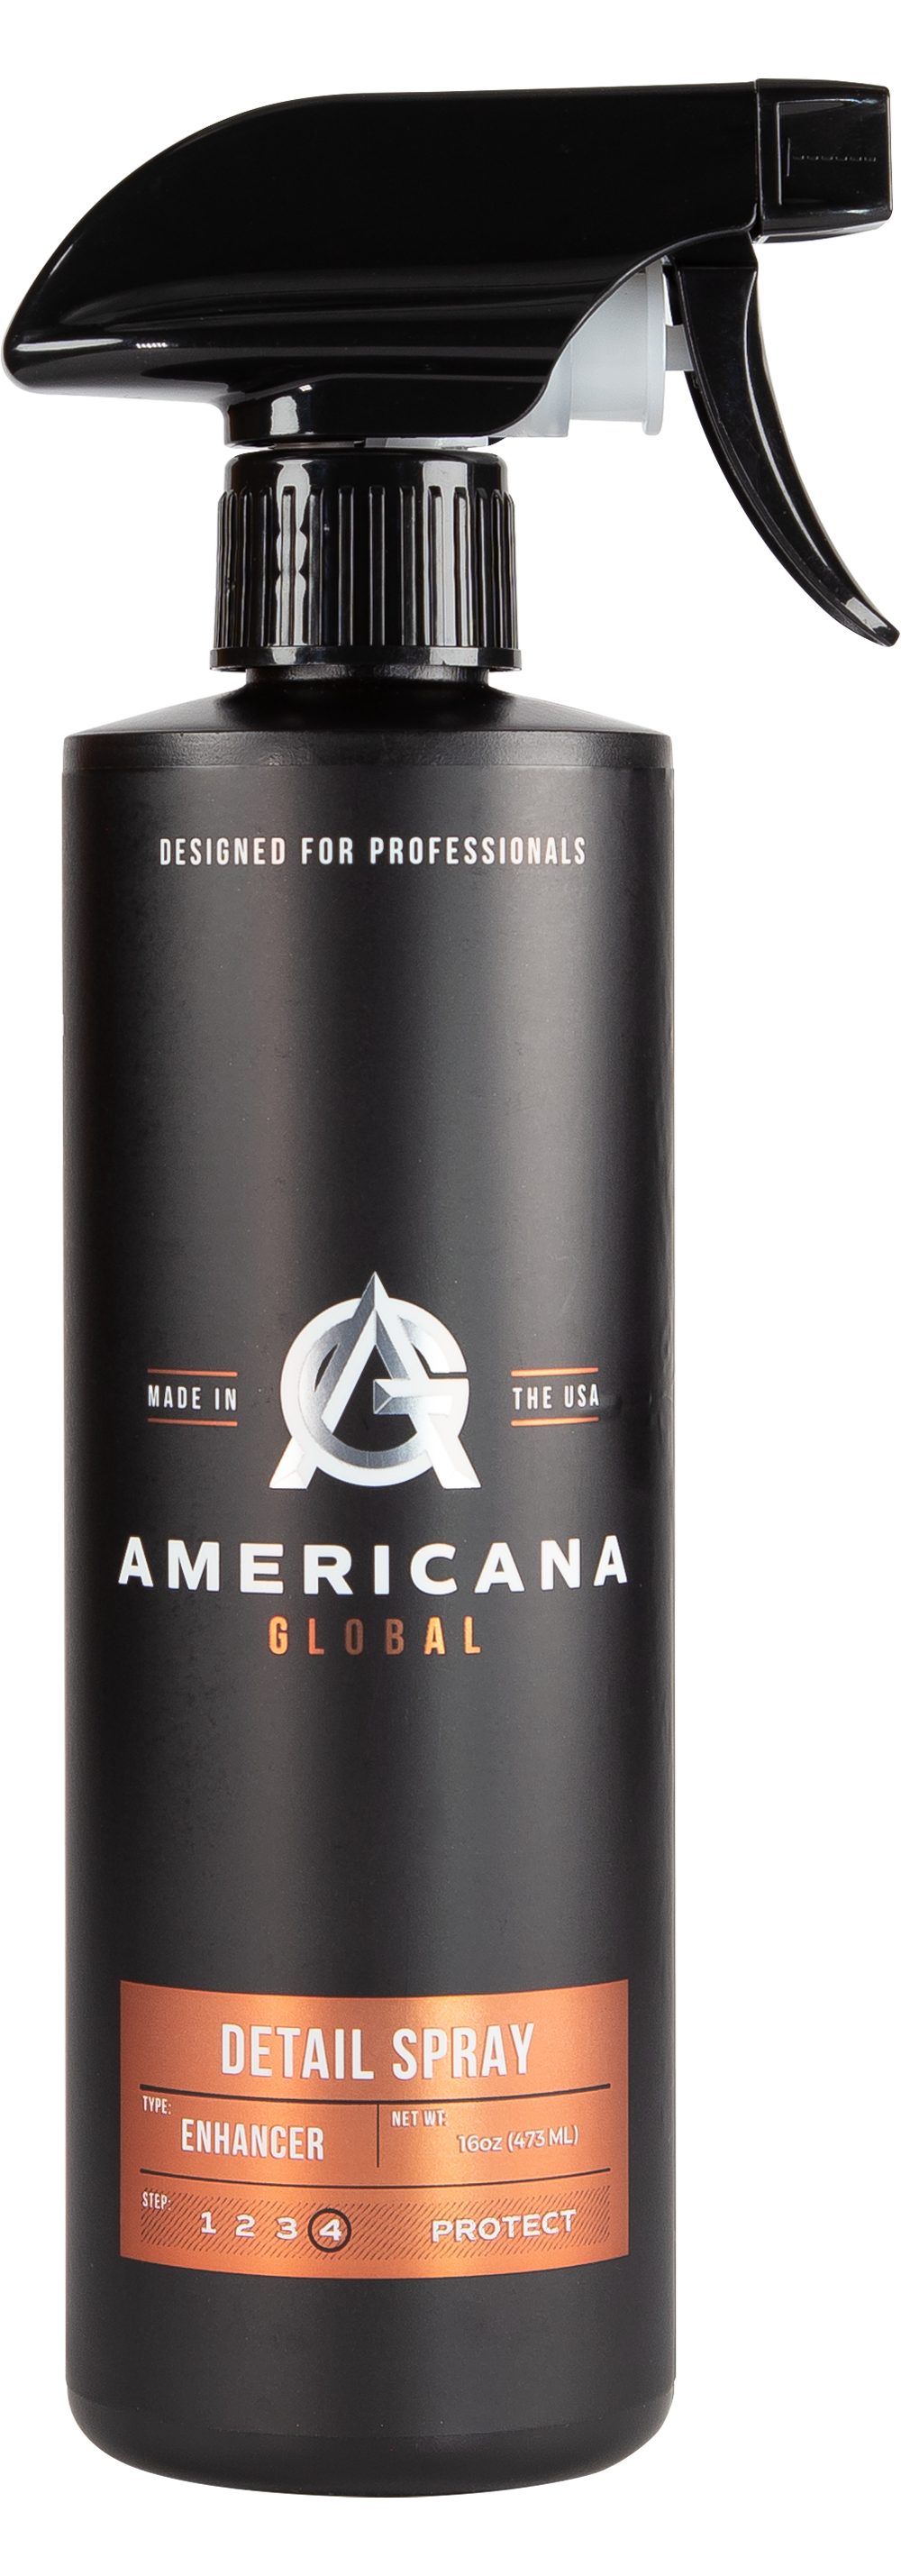 Americana Global - Detail Spray